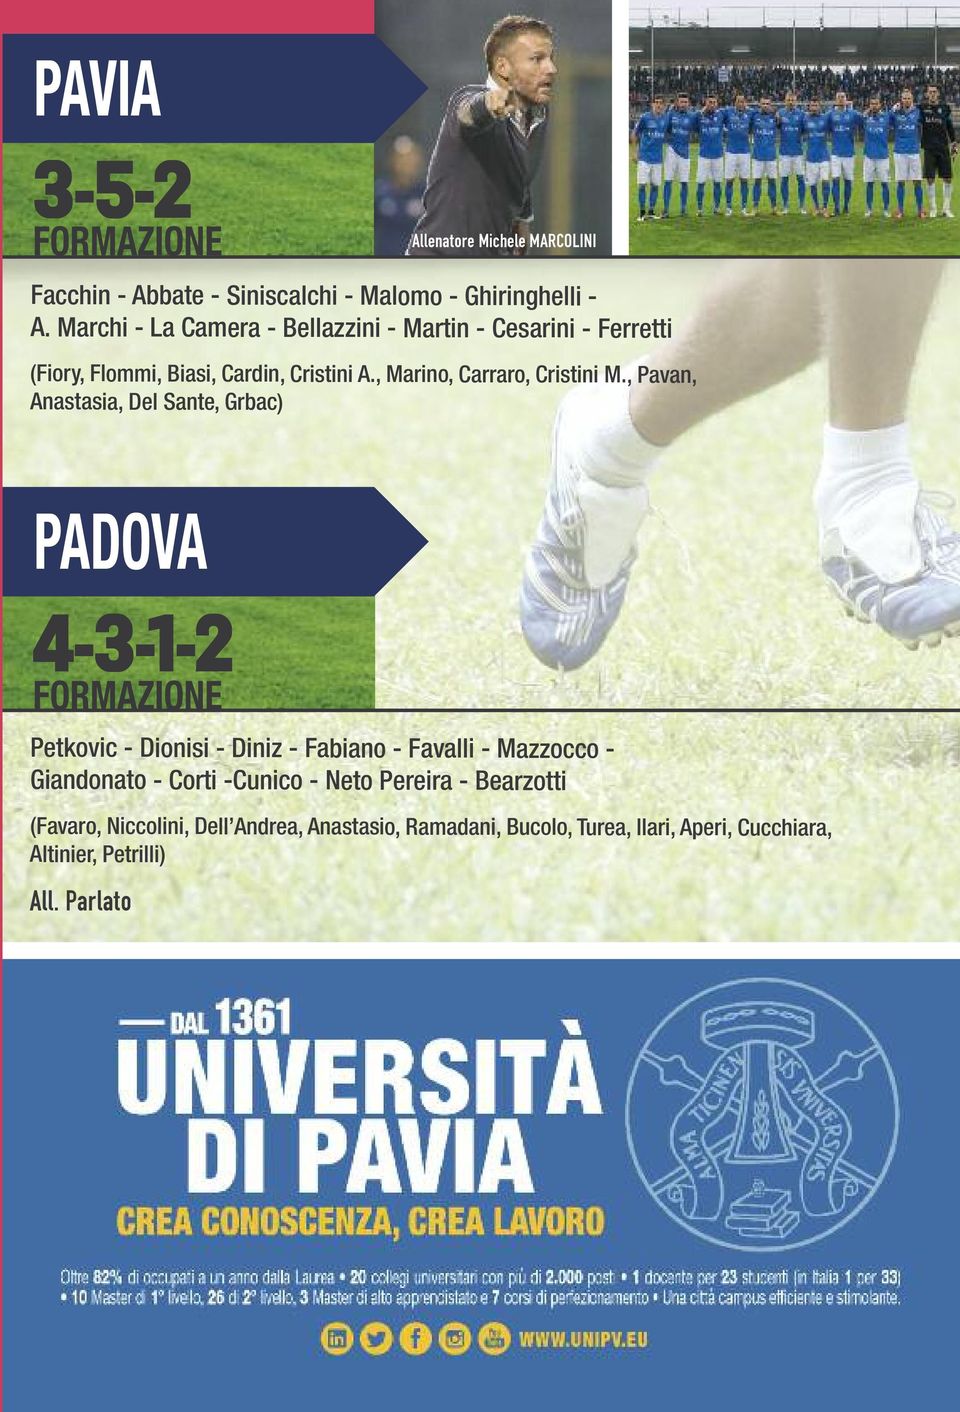 , Pavan, Anastasia, Del Sante, Grbac) PADOVA 4-3-1-2 FORMAZIONE Petkovic - Dionisi - Diniz - Fabiano - Favalli - Mazzocco - Giandonato -